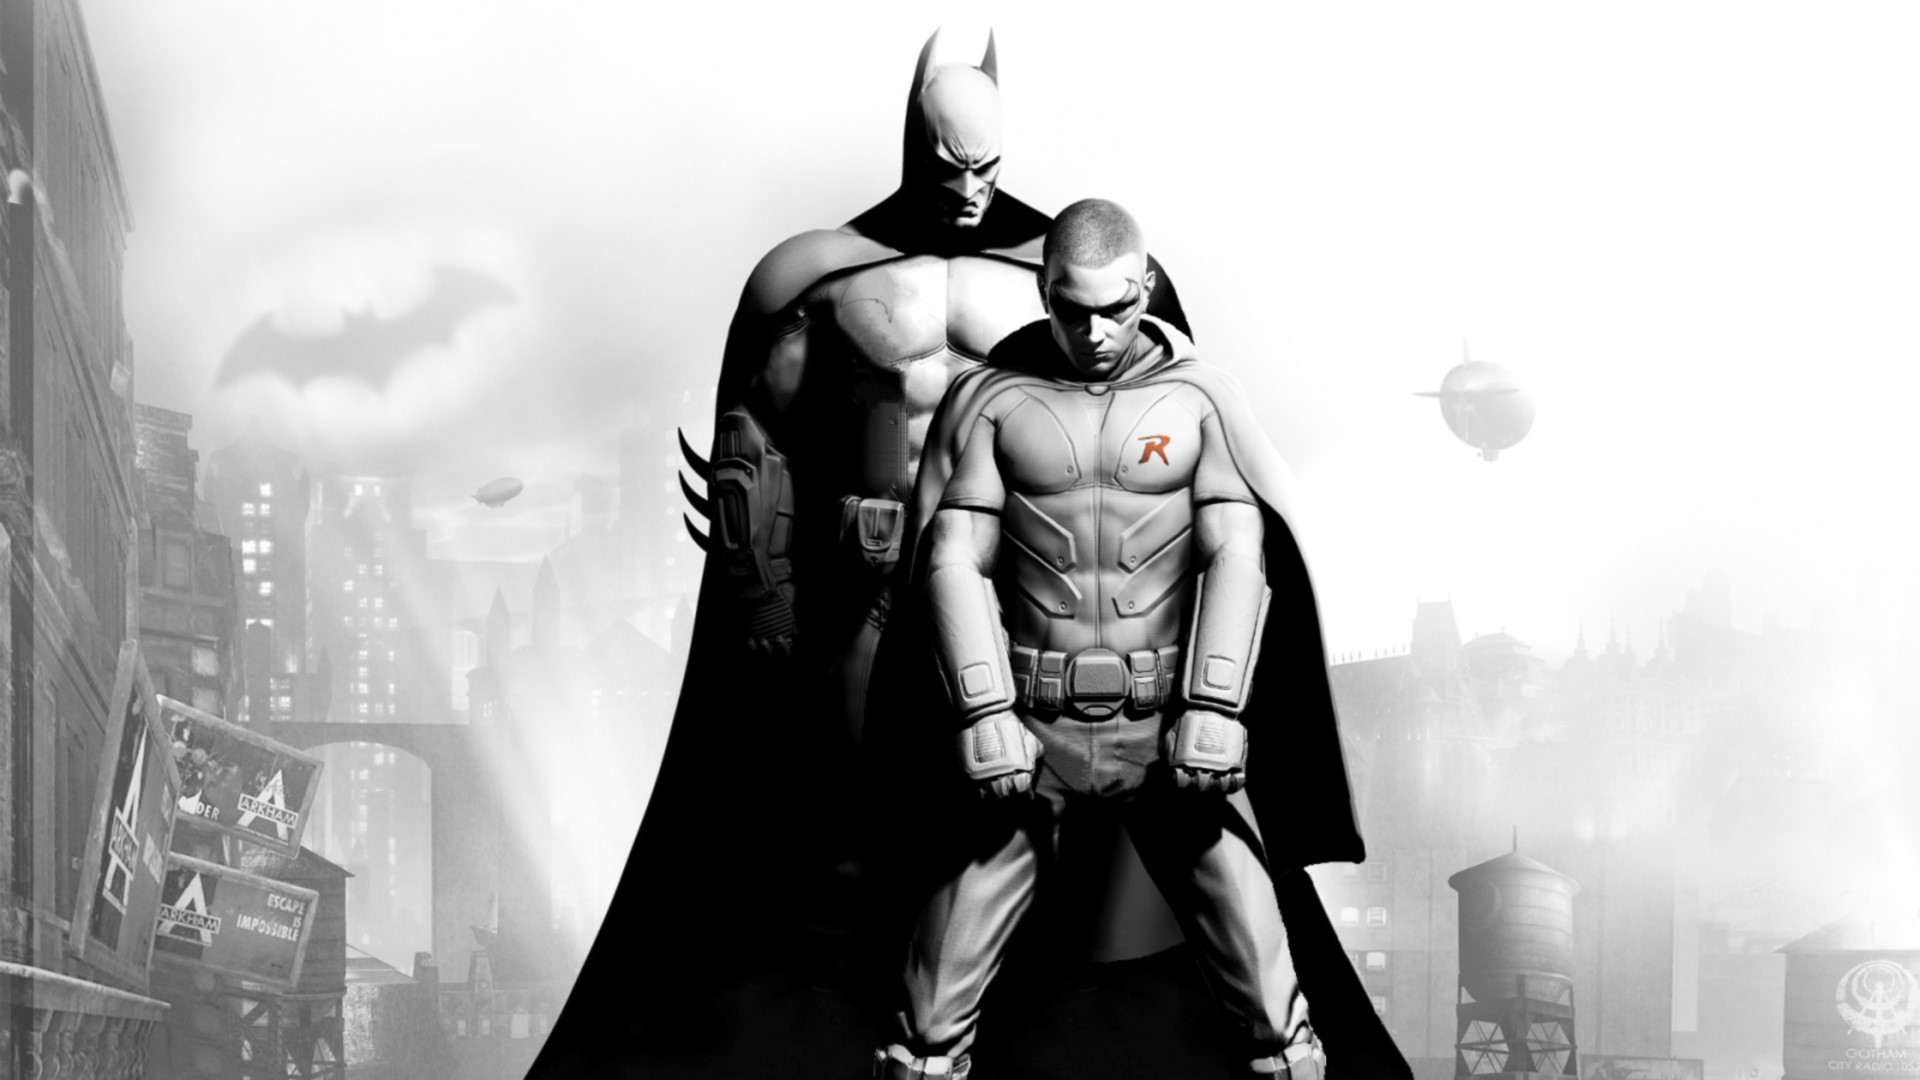 fond d'écran batman et robin,homme chauve souris,super héros,personnage fictif,ligue de justice,héros